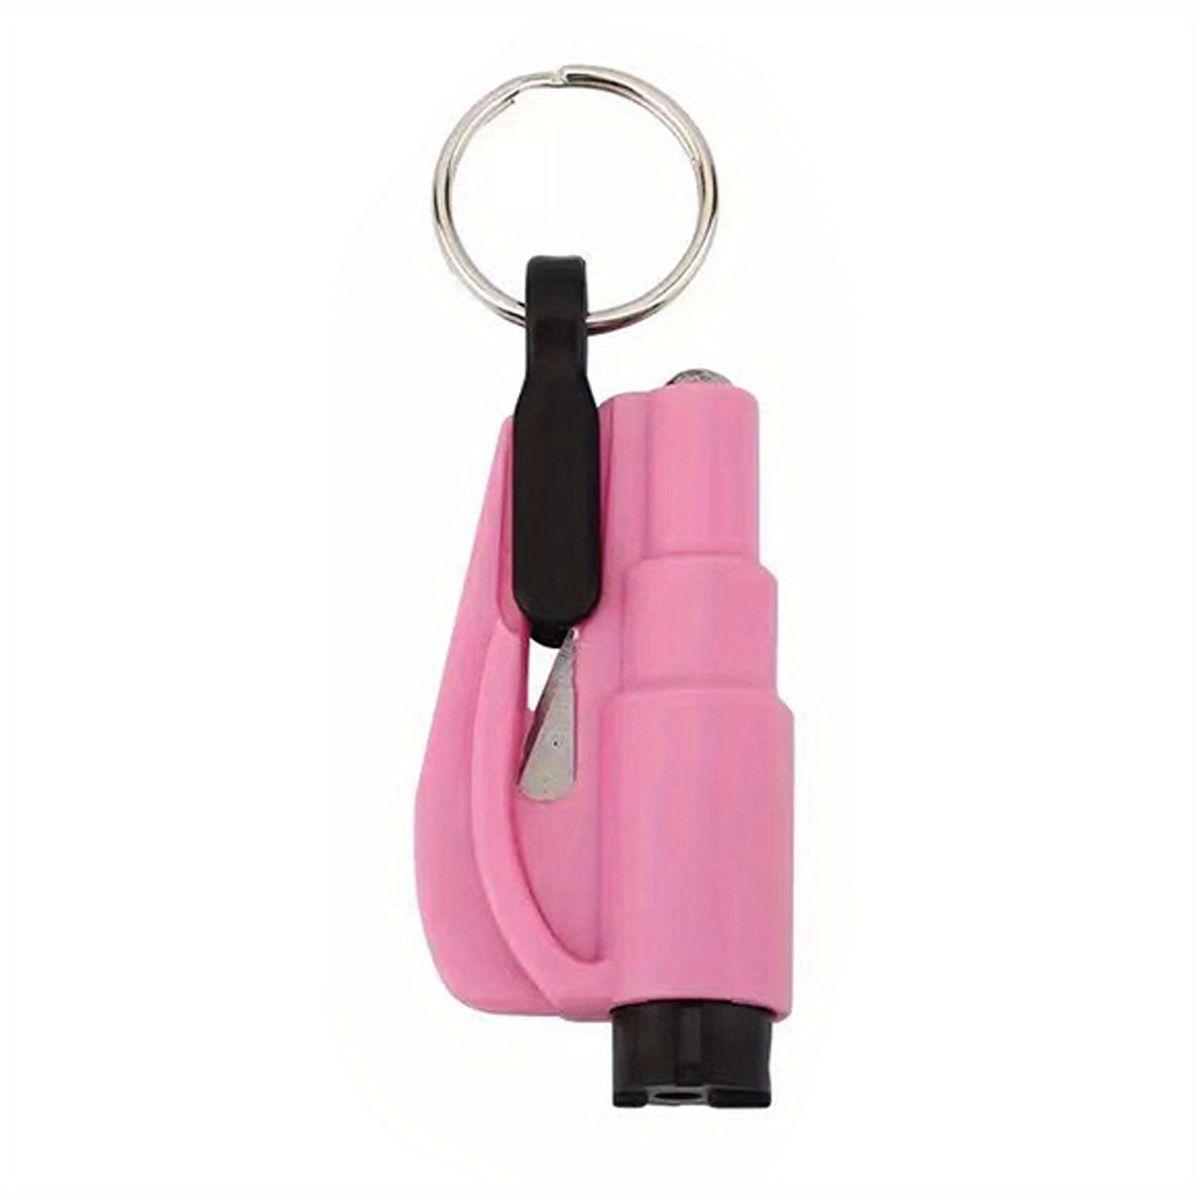 Buy QUZOC Seatbelt Cutter Window Breaker Keychain 3-in-1 Car Glass